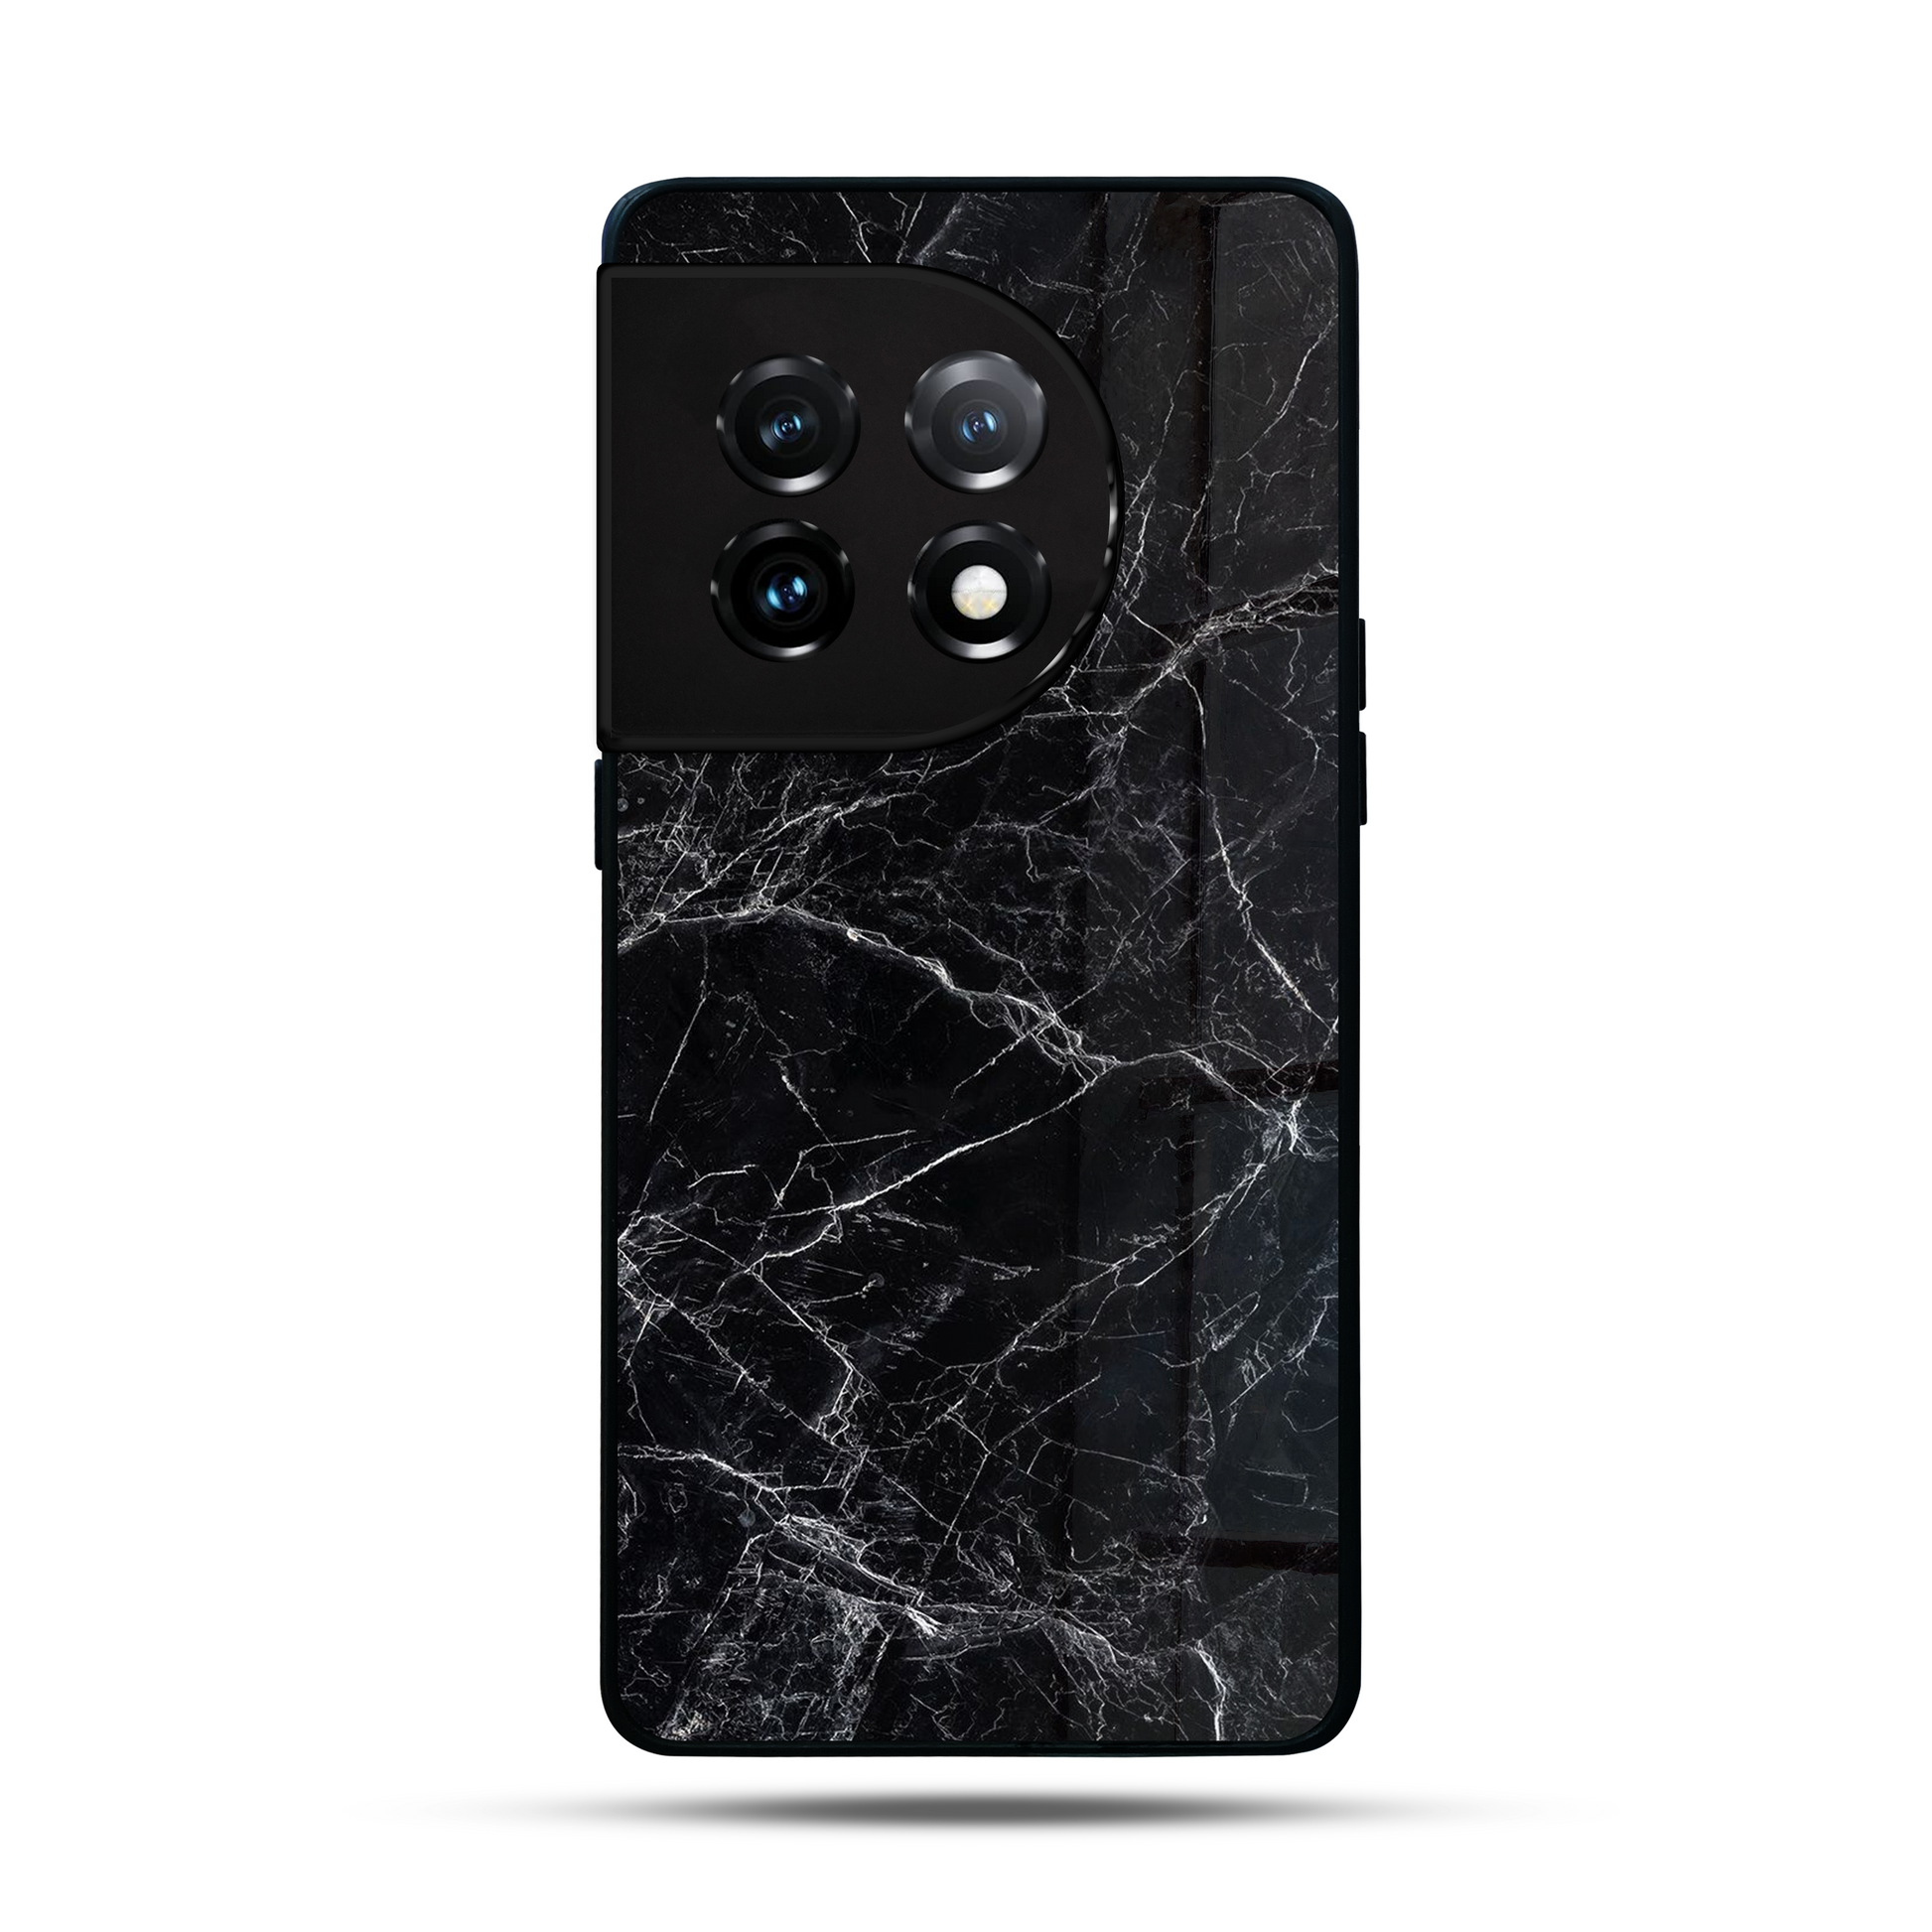 Liquid Marble All Black SuperGlass Case Cover